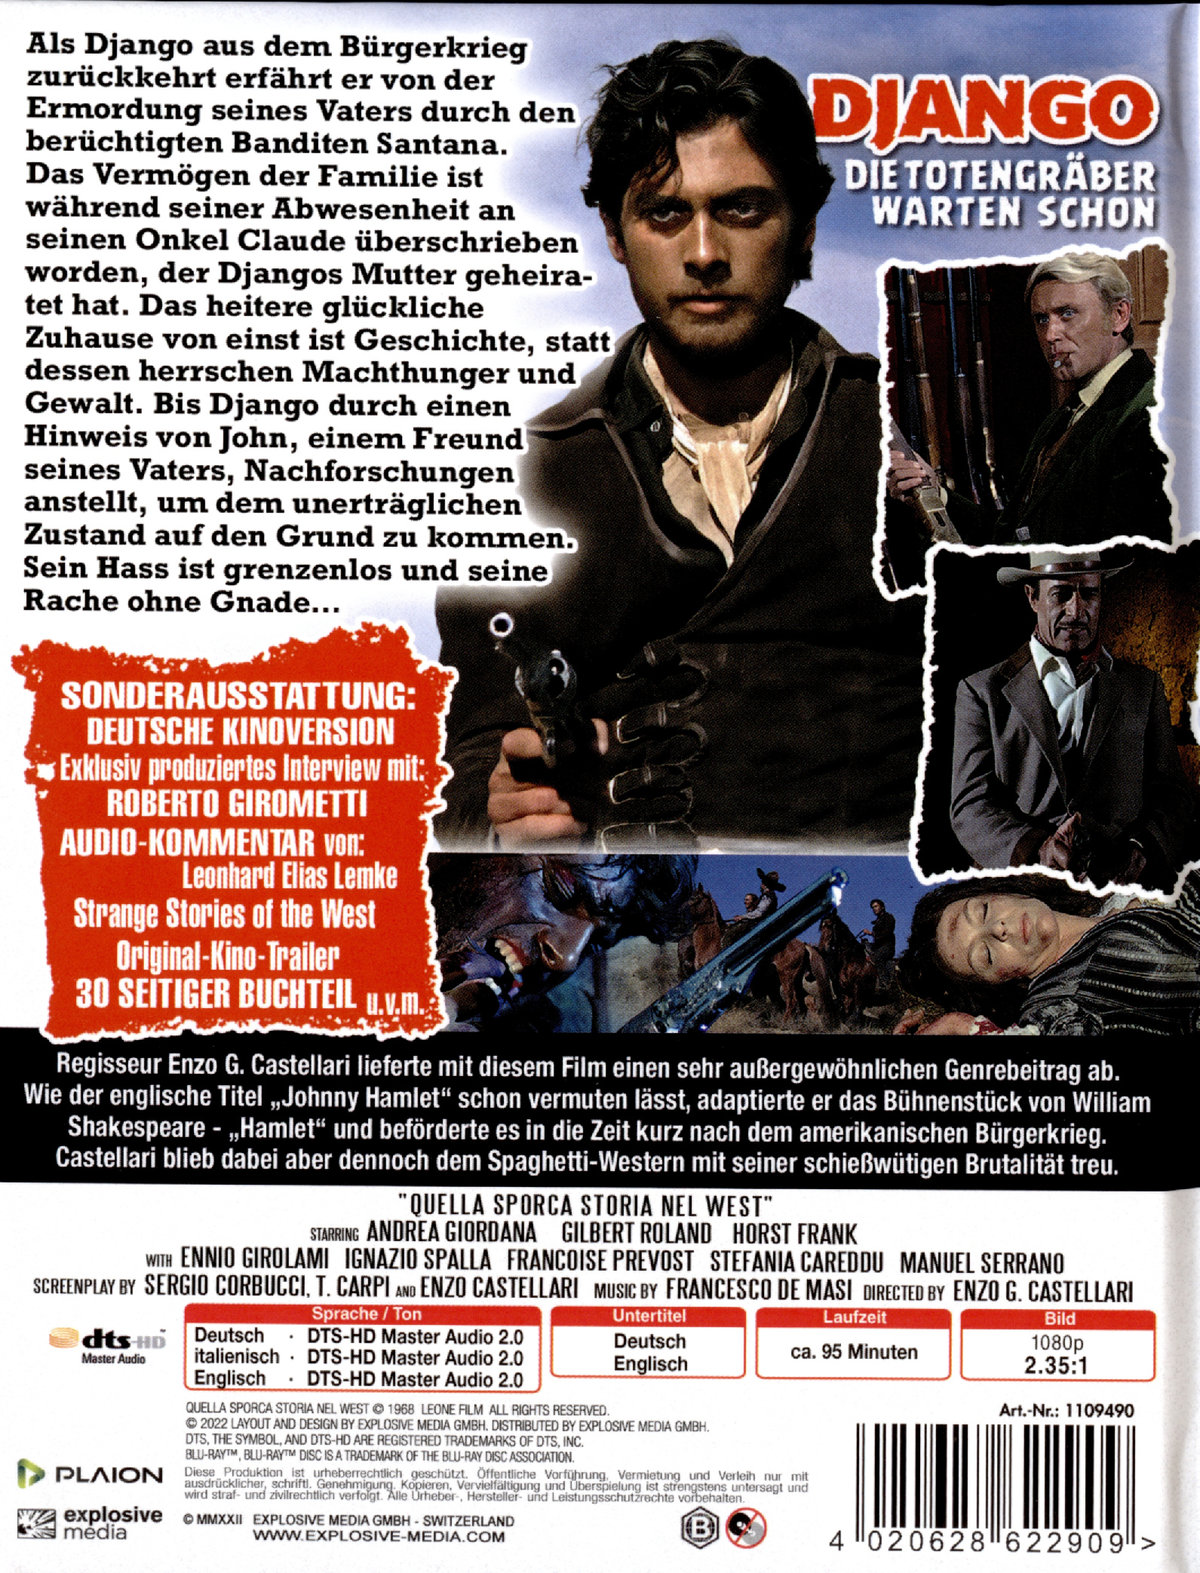 Django - Die Totengräber warten schon - Uncut Mediabook Edititon (DVD+blu-ray) (A)